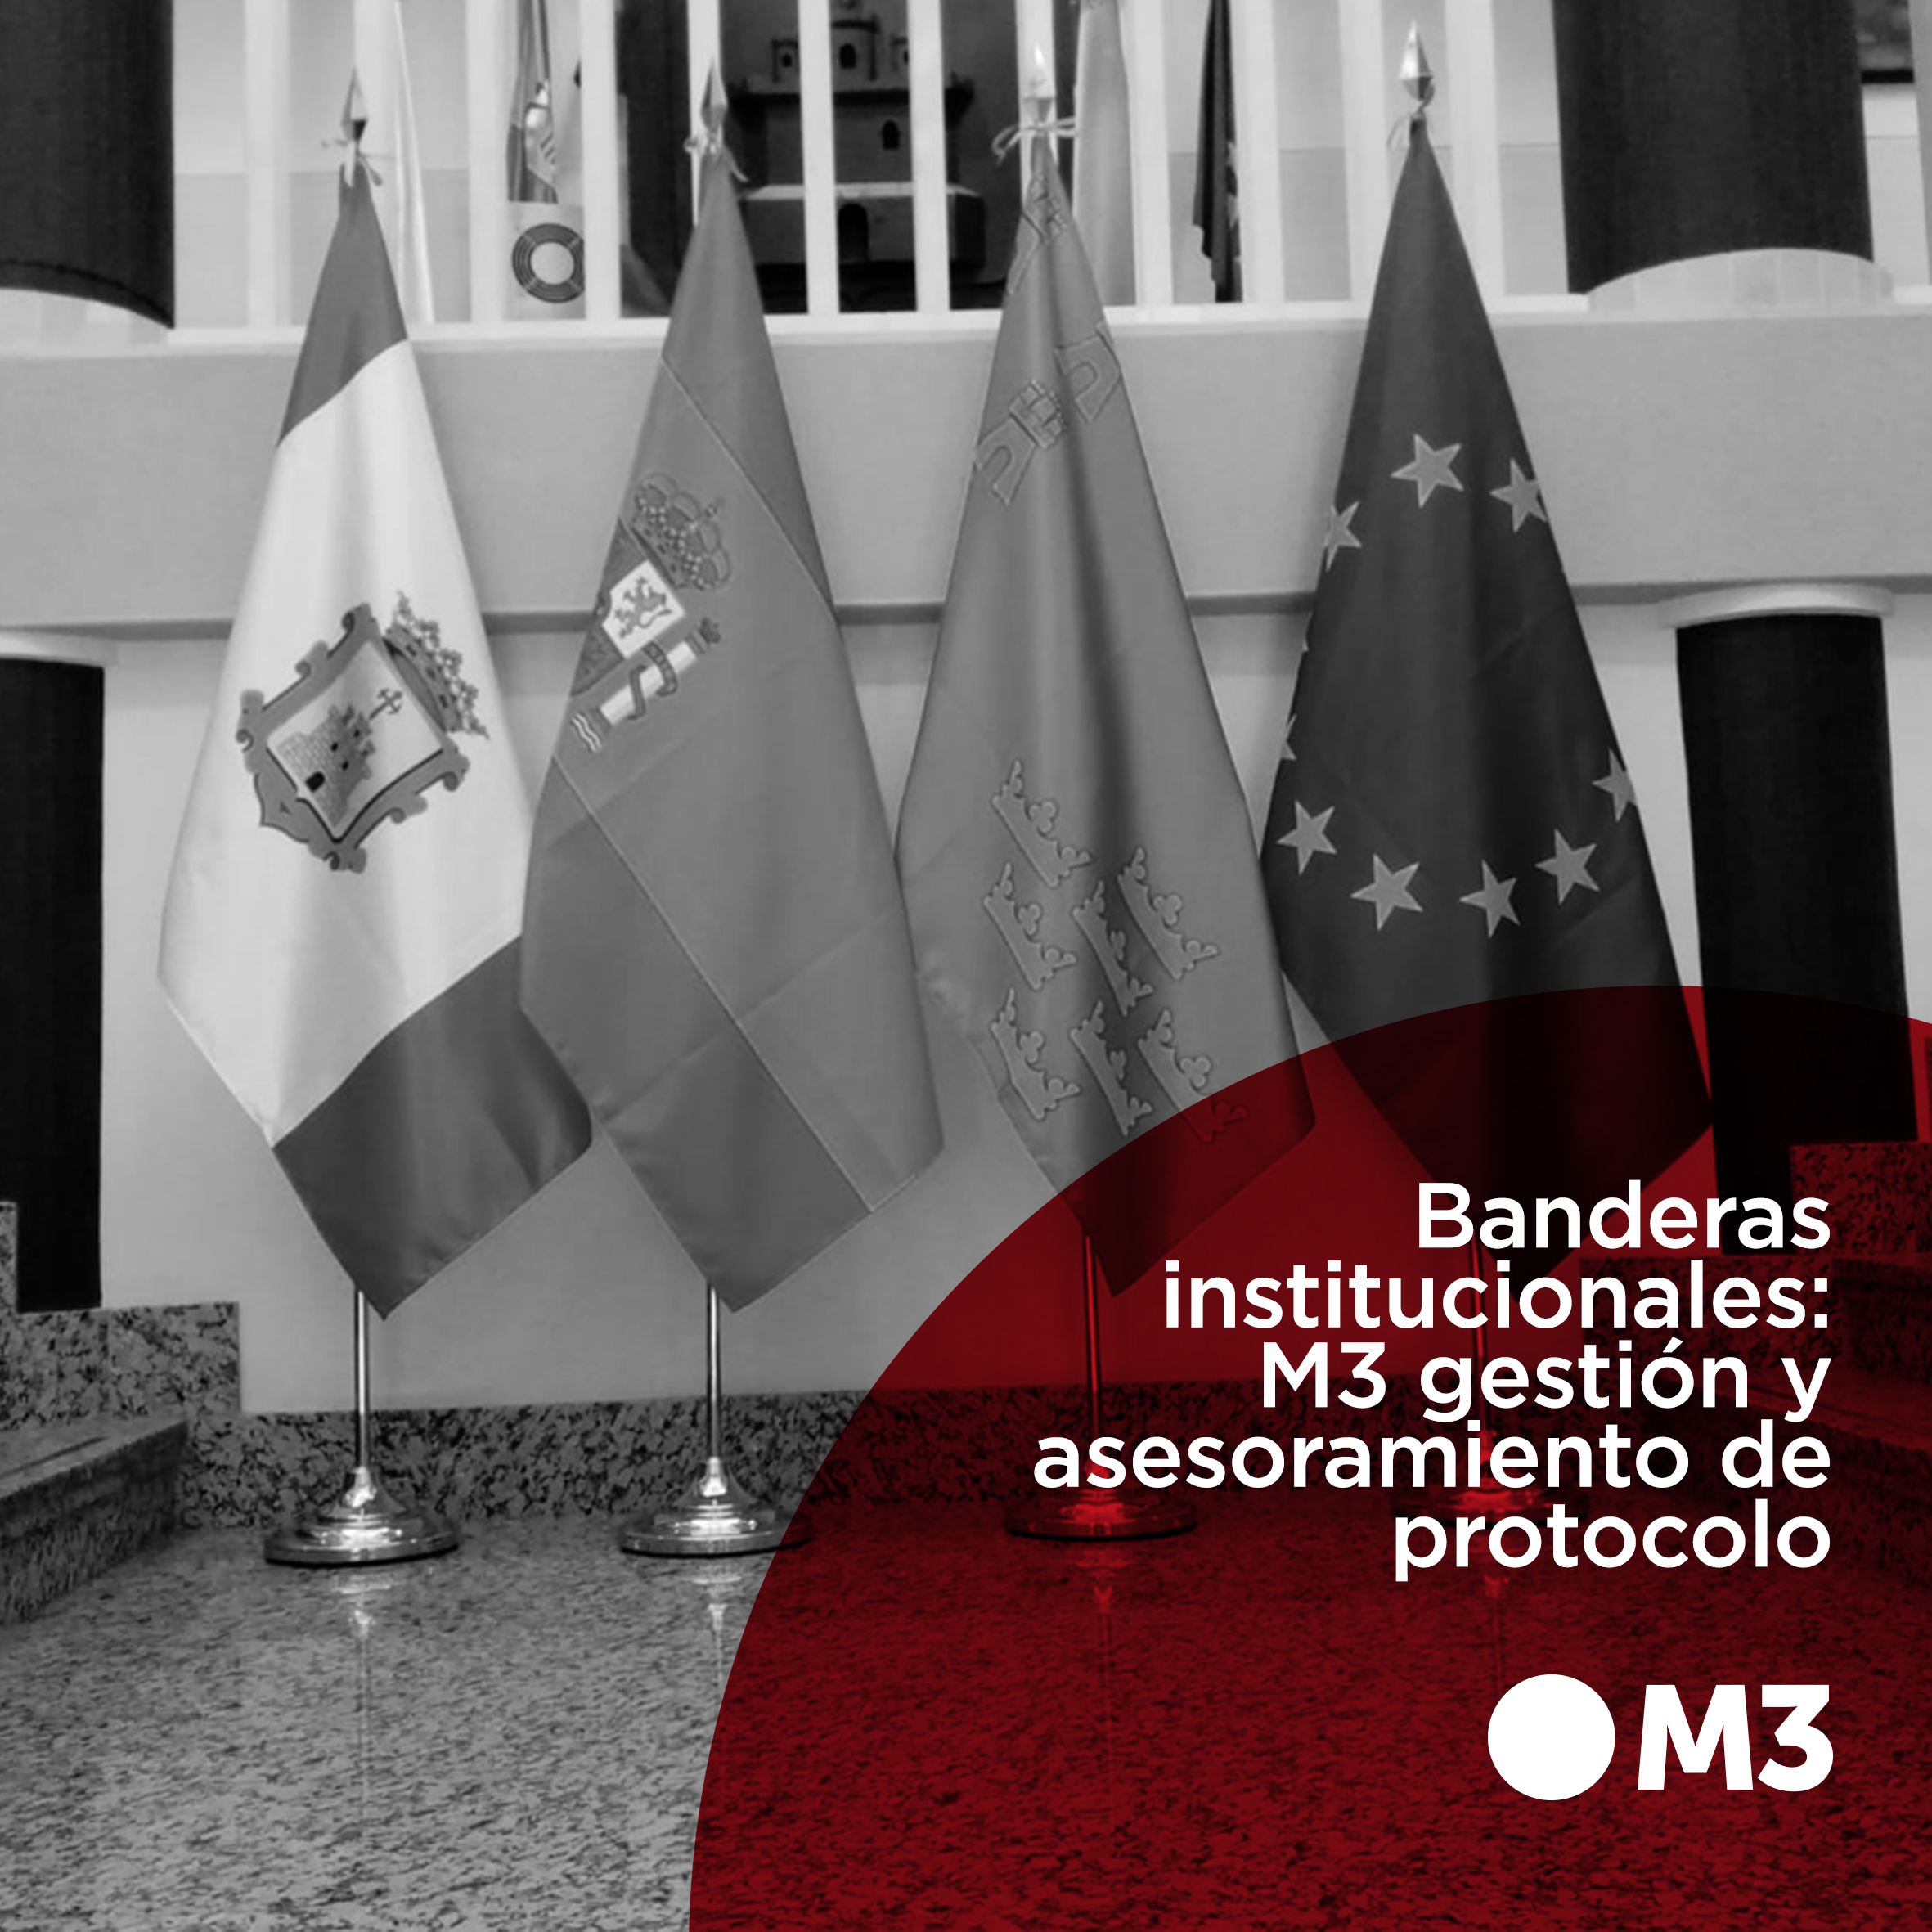 Banderas institucionales: M3 gestión y asesoramiento de protocolo